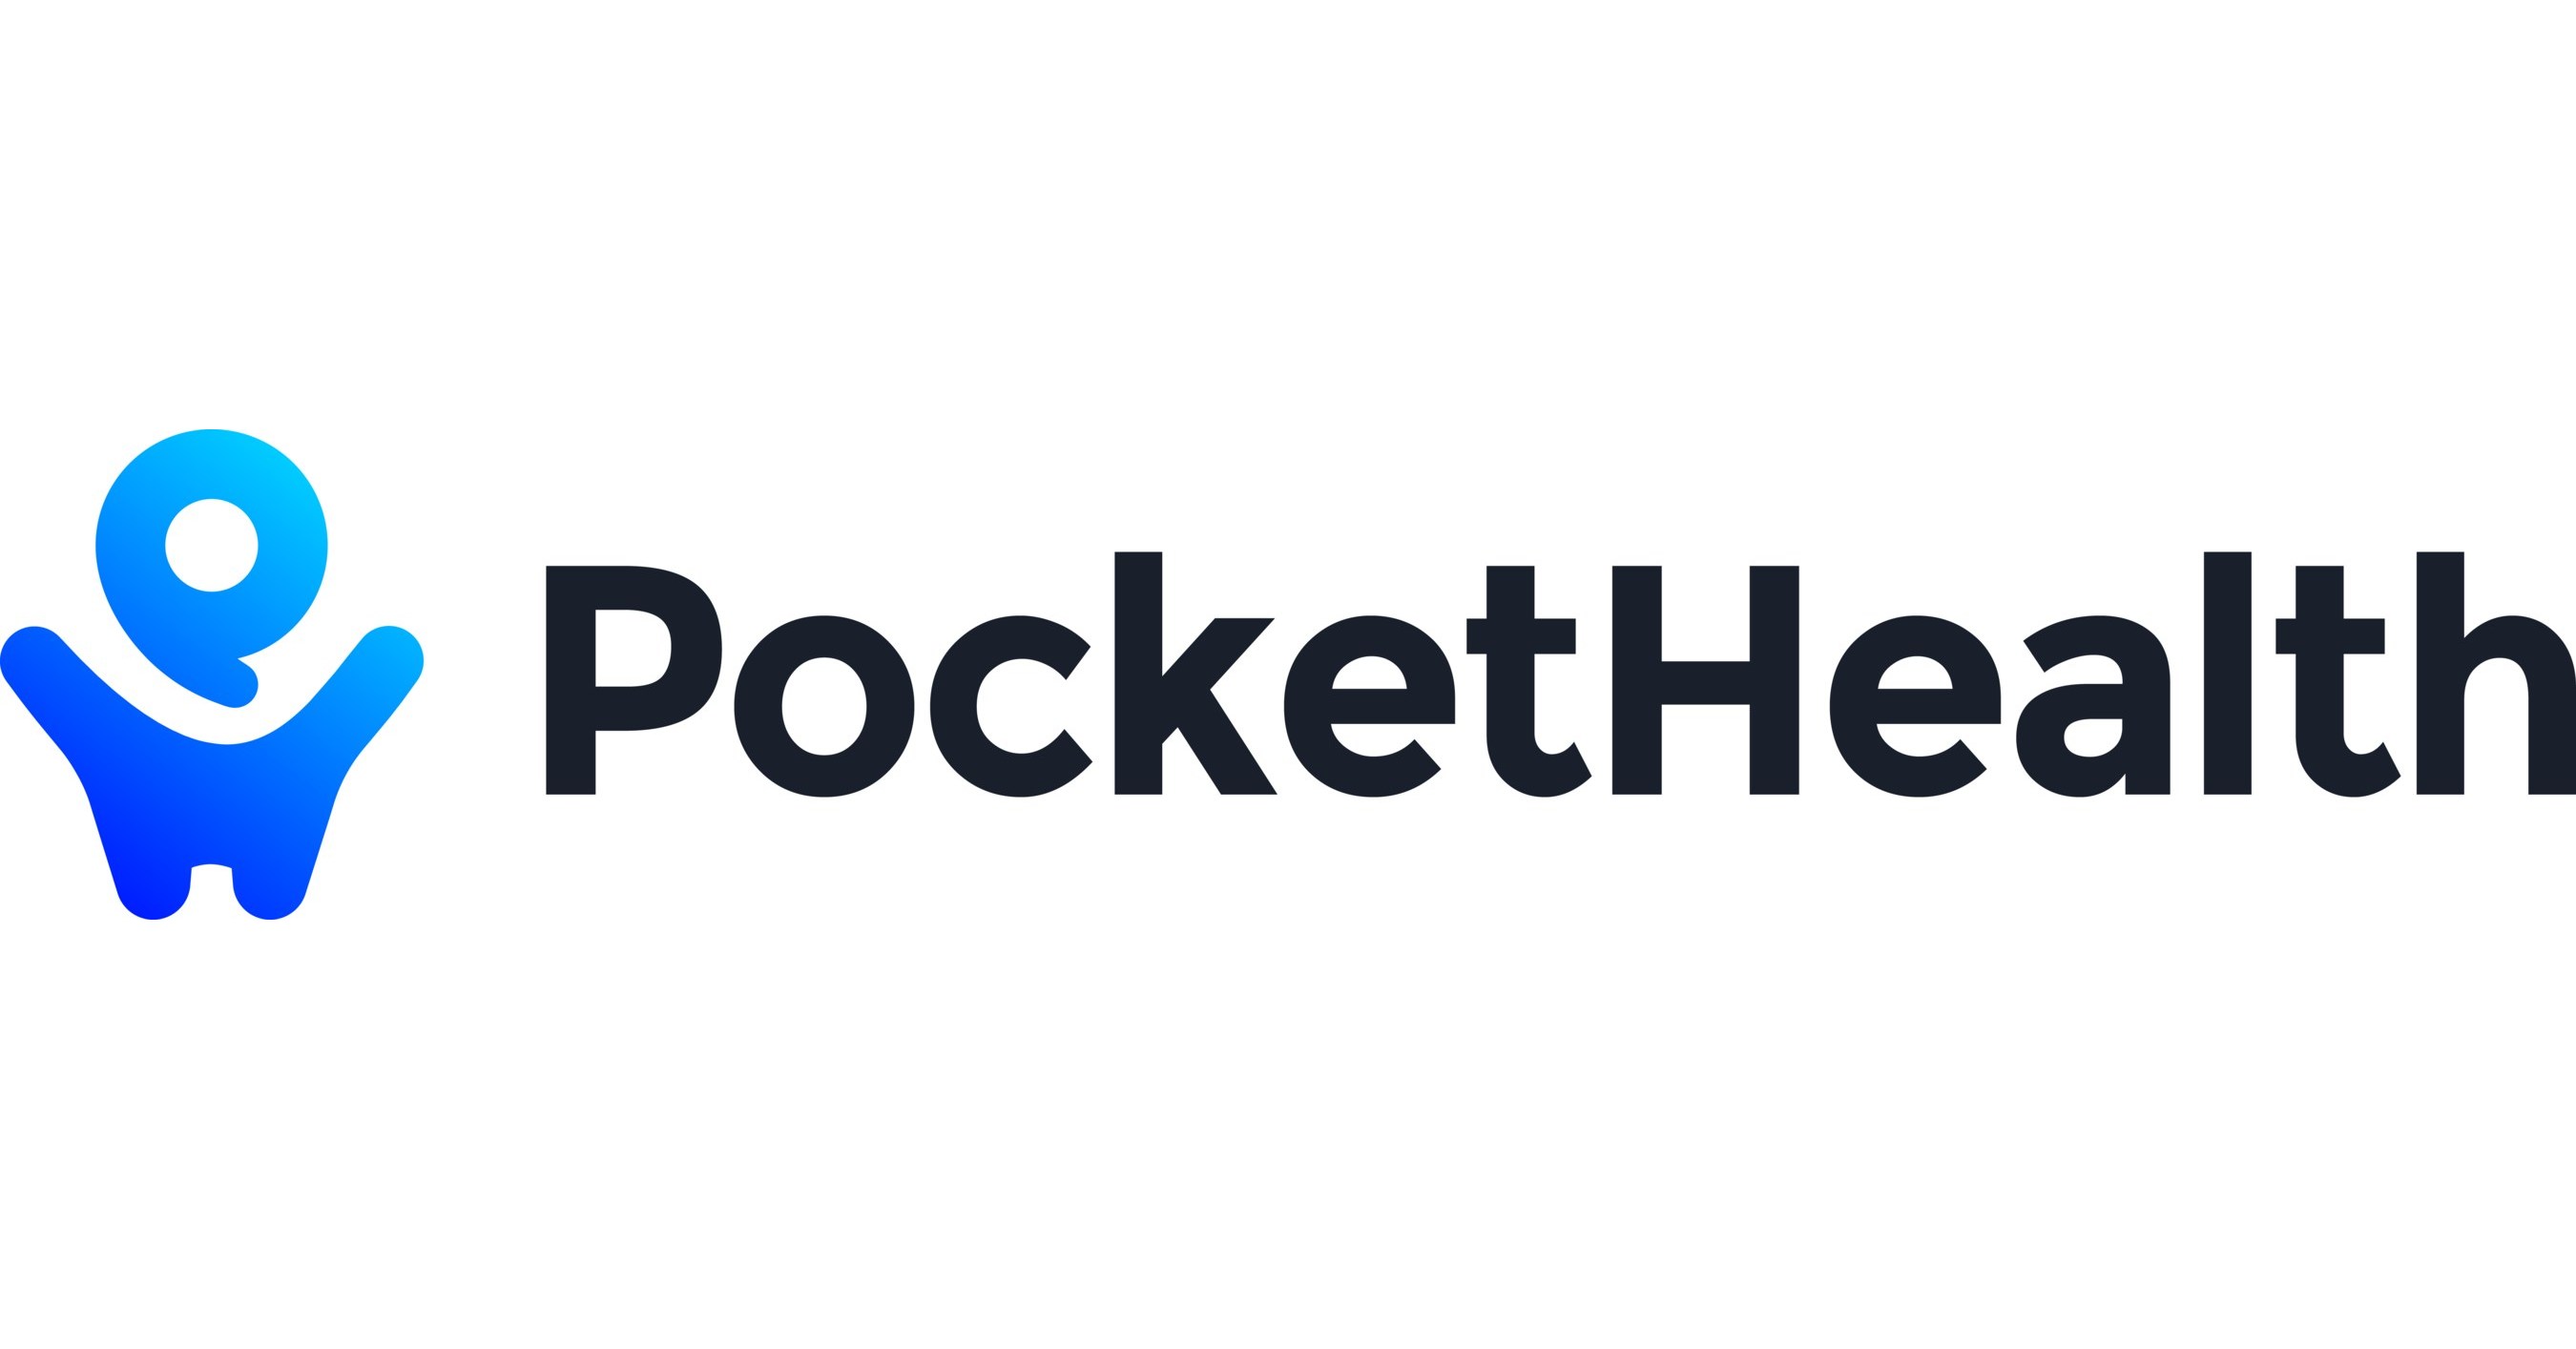 Patients  PocketHealth